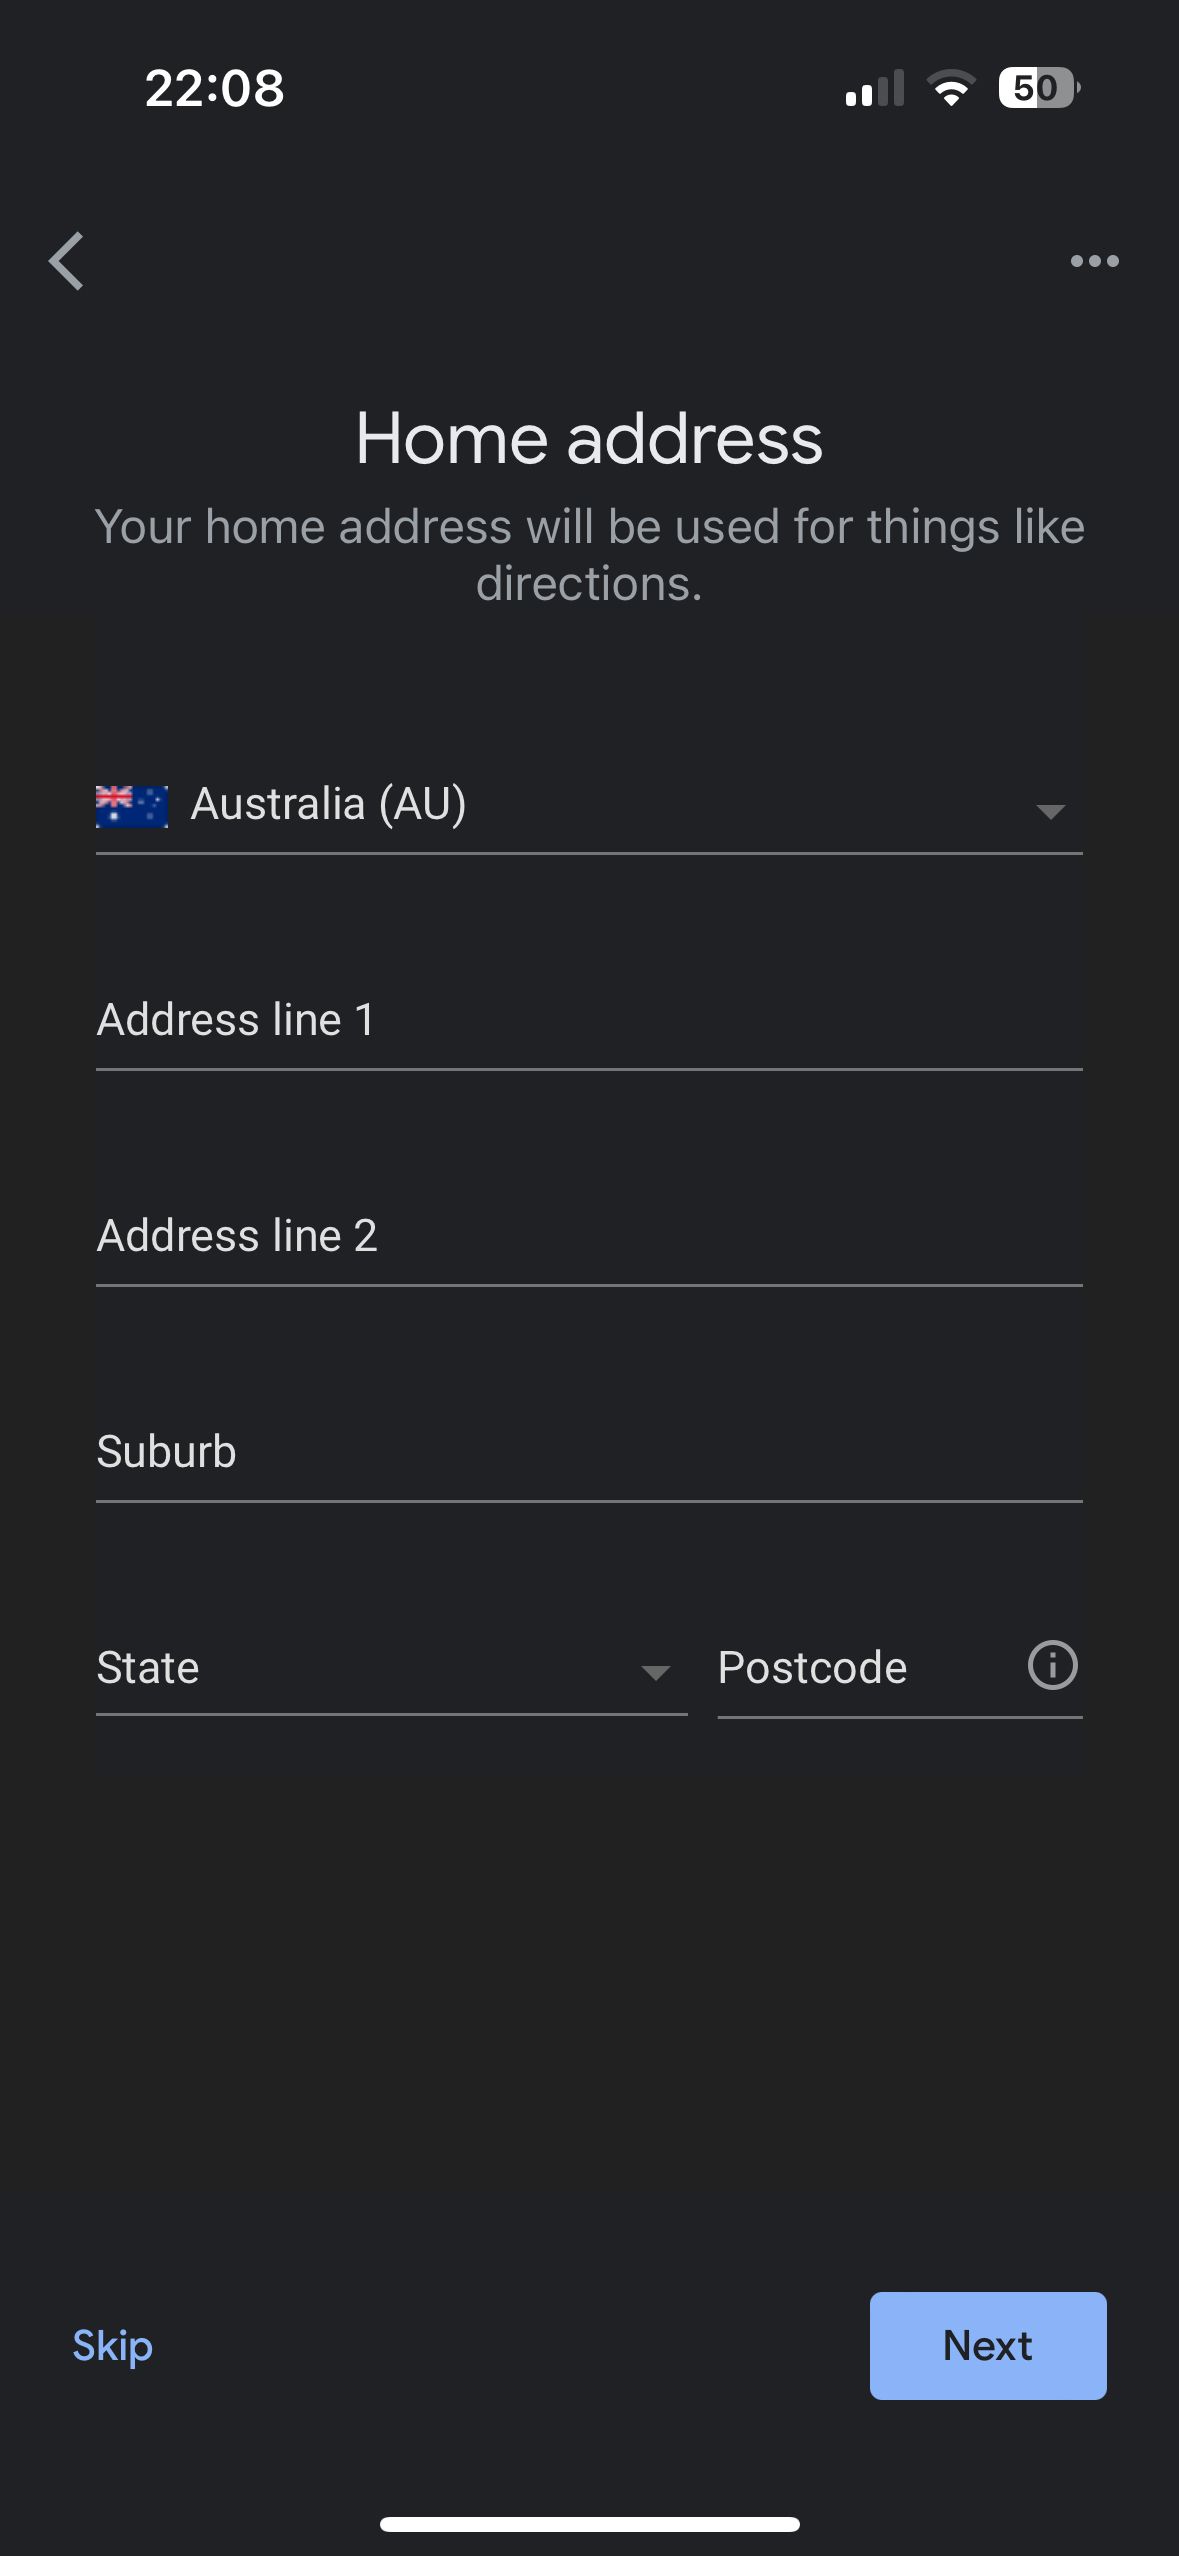 Captura de tela da tela de entrada do endereço residencial no app Google Home, com campos para inserir endereço, subúrbio, estado e código postal da Austrália